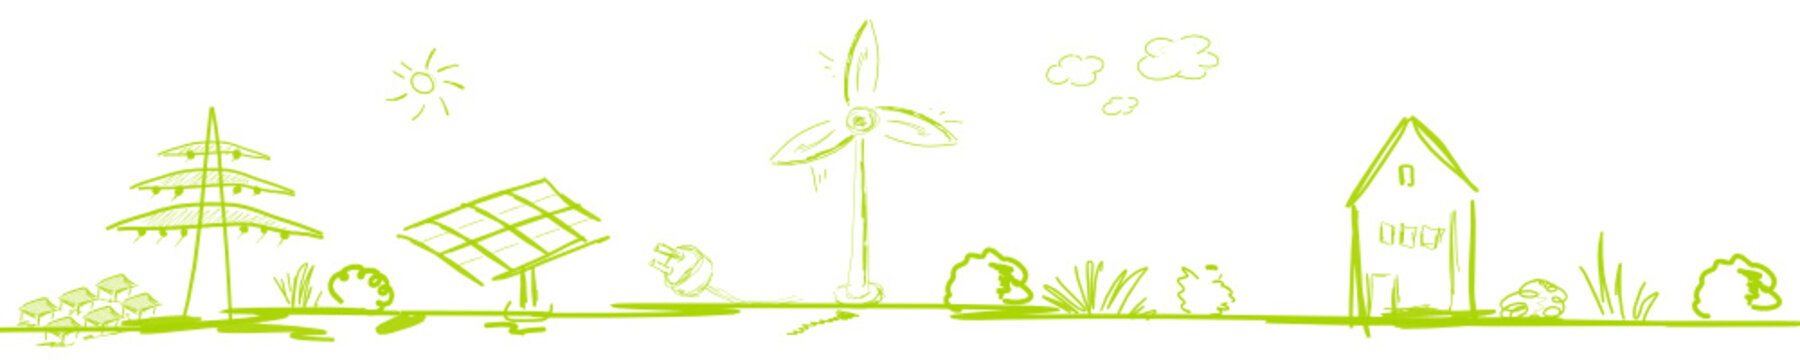 Band Banner Grün Energie Landschaft Skizze Zeichnung Energy Business Solar Windenergie